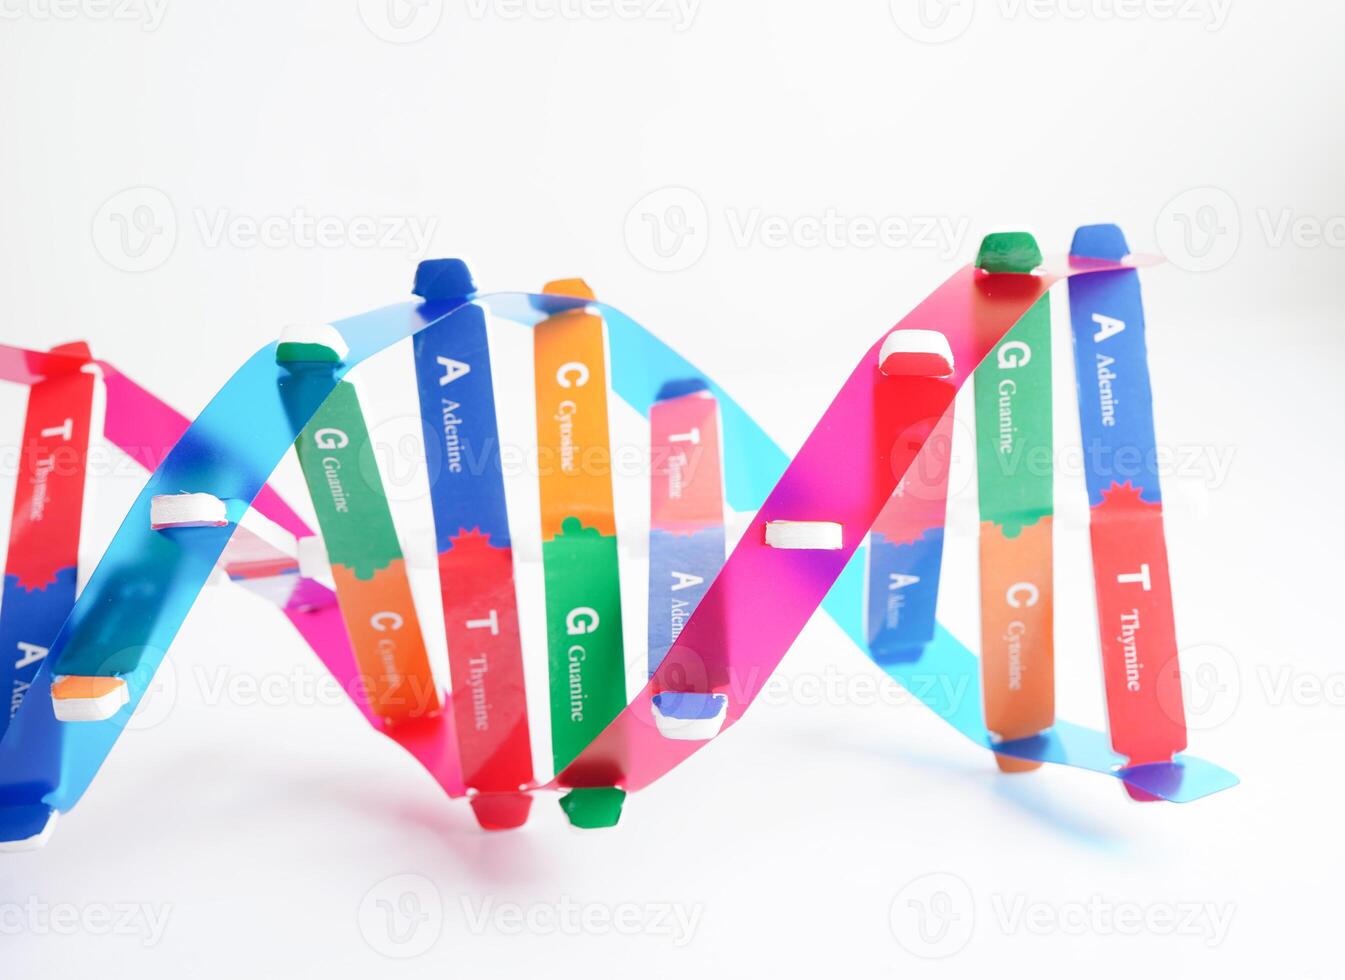 dna molekyl spiral strukturera modell isolerat på vit bakgrund, kromosom och gen kemisk vetenskap biologi. foto